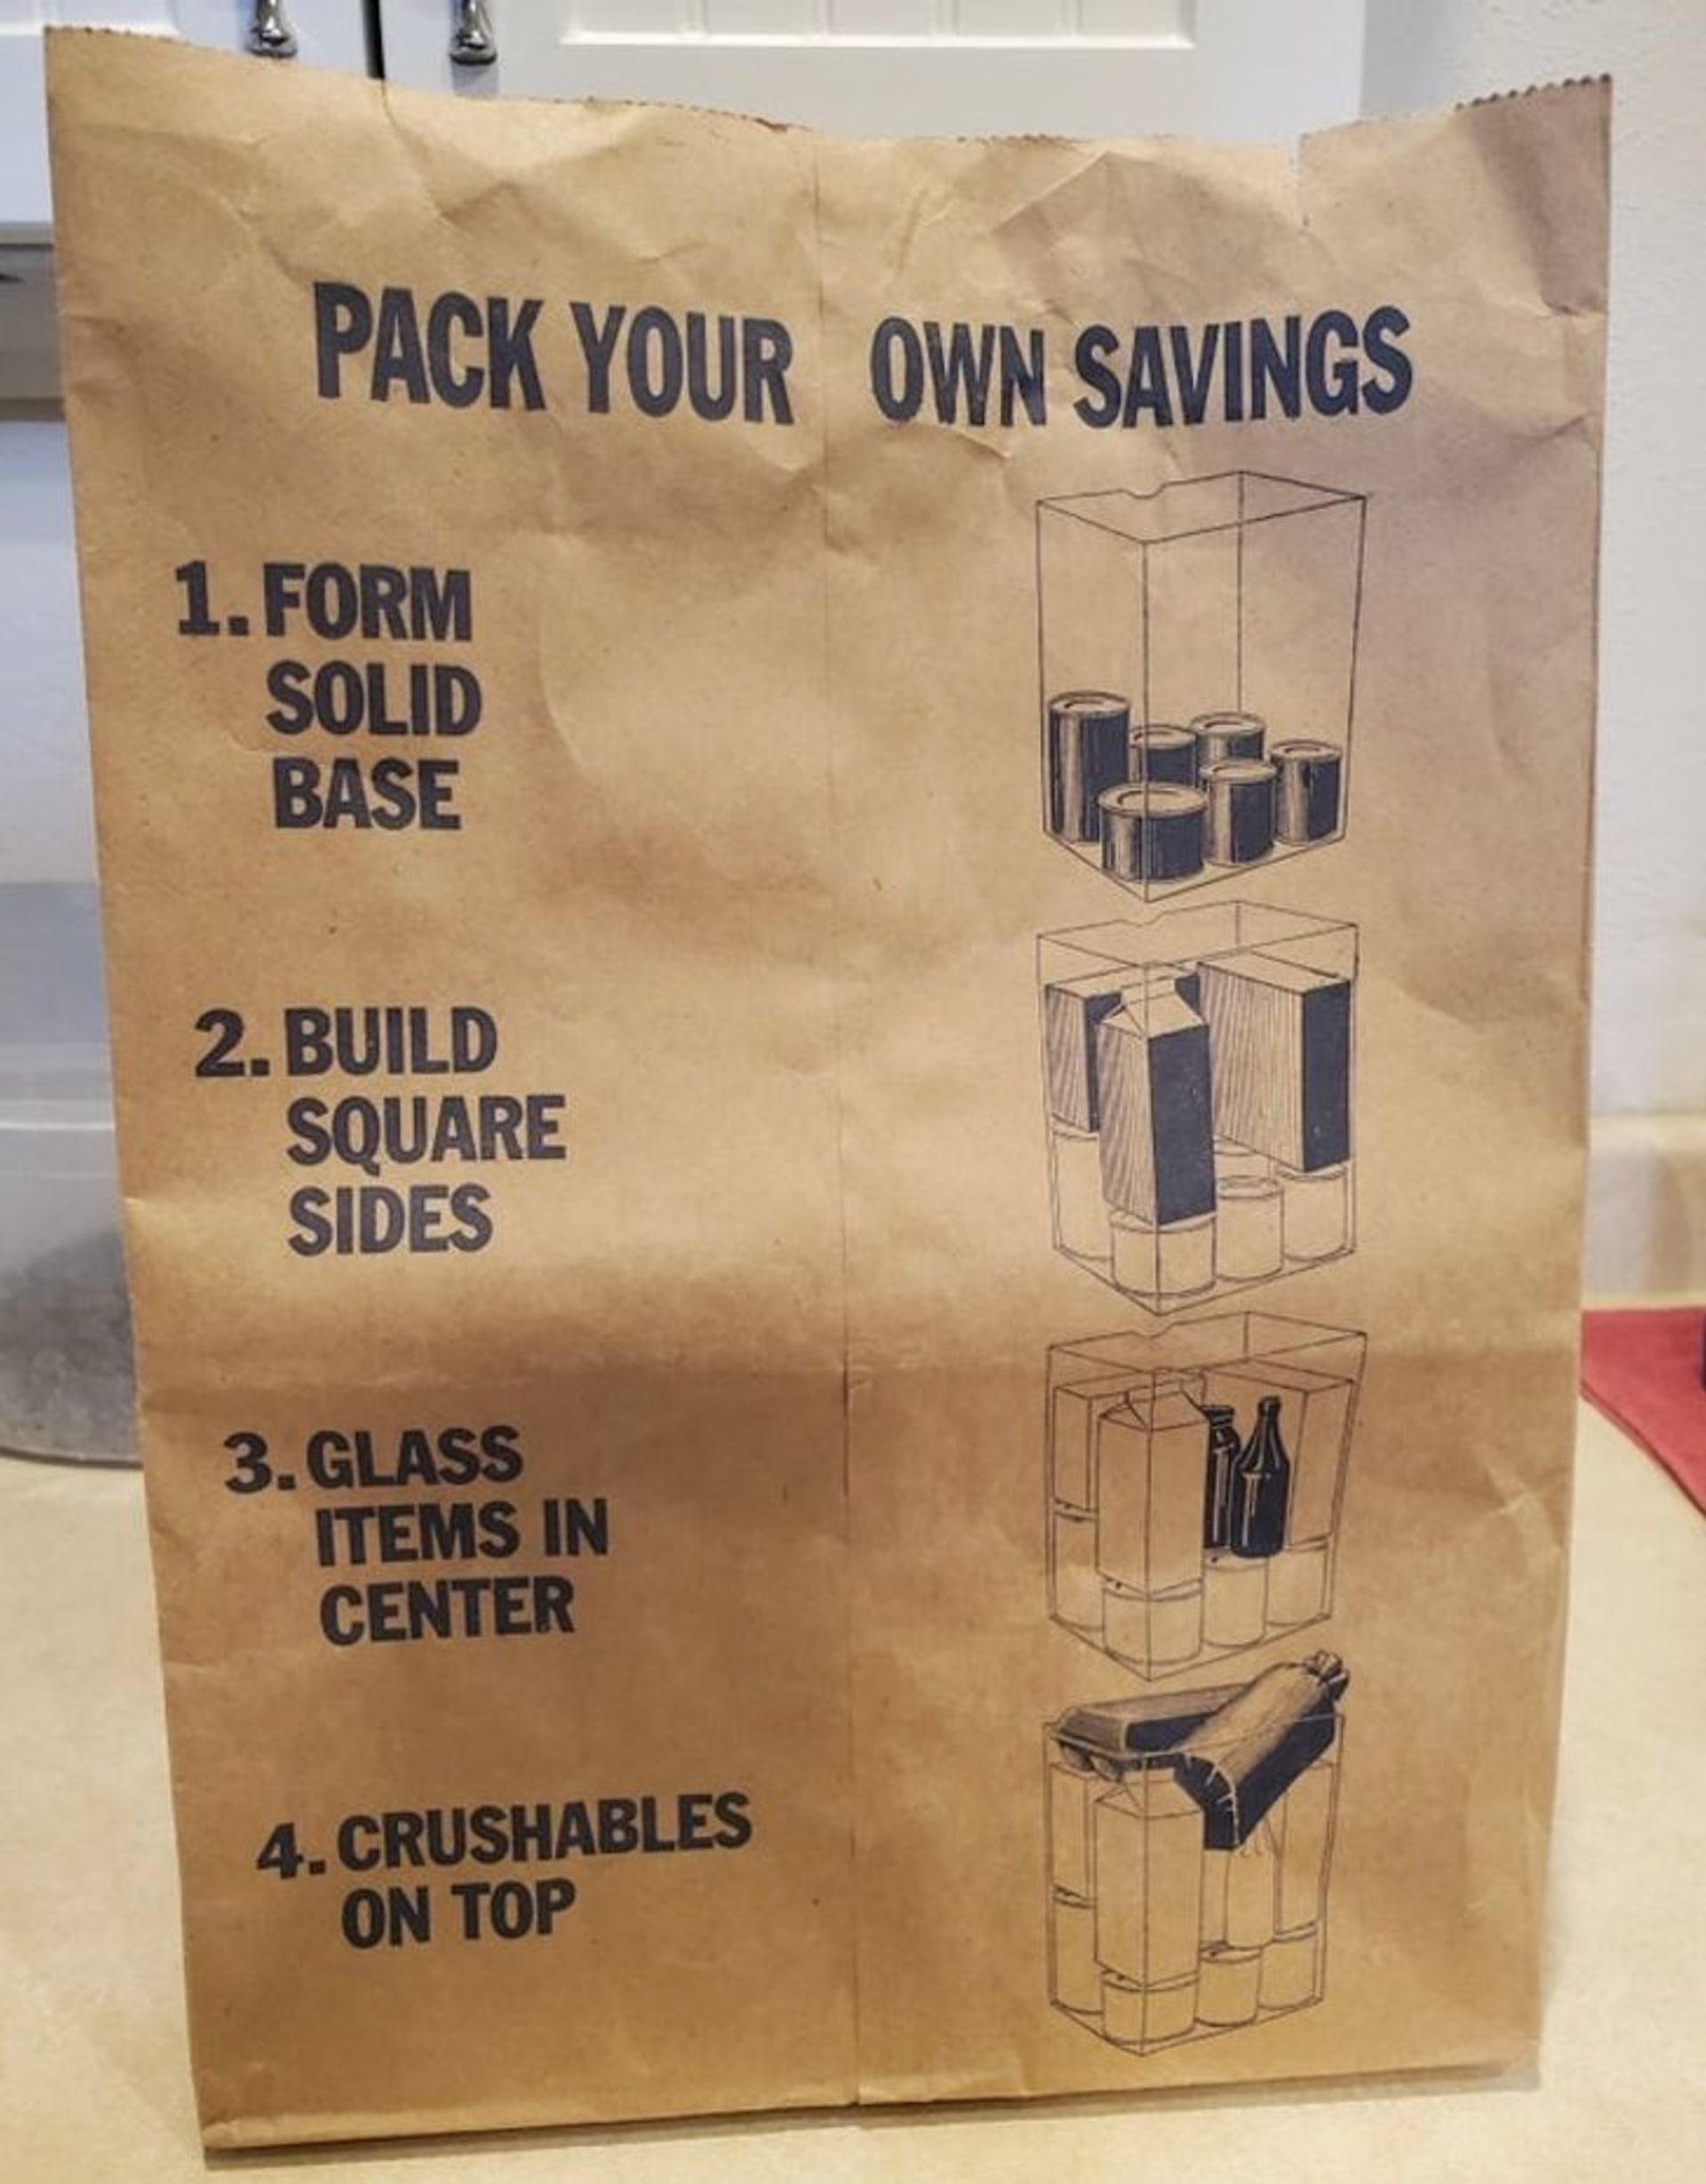 Papírová taška vám poradí, jak do ní nejefektivněji zabalit nákup